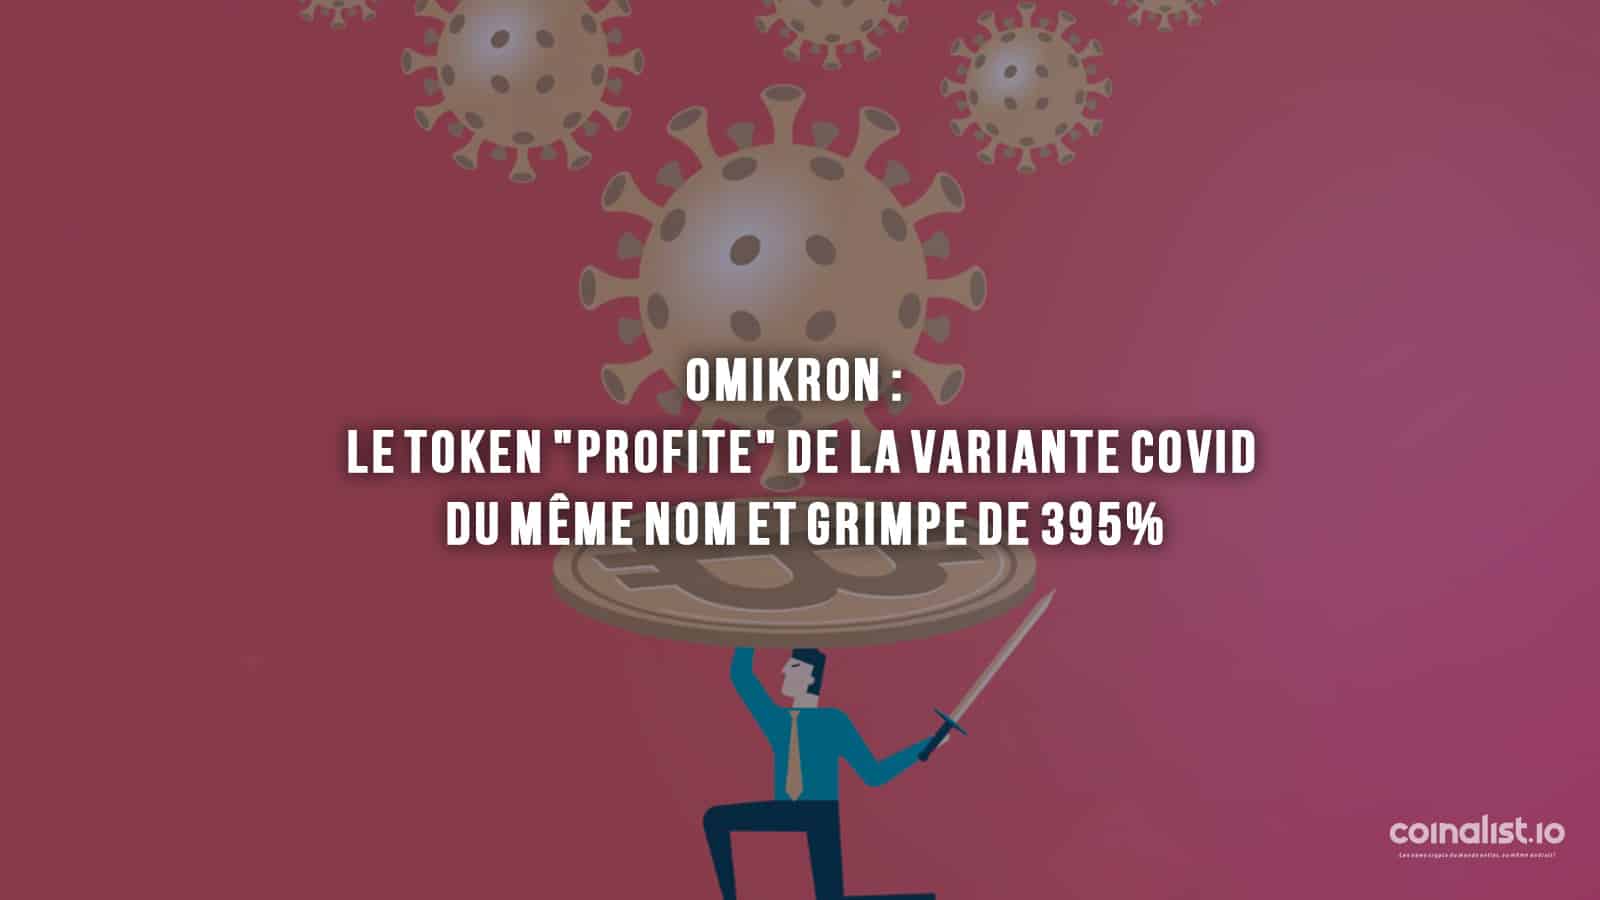 Omikron : Le Token &Quot;Profite&Quot; De La Variante Covid Du Même Nom Et Grimpe De 395% - Conception Graphique